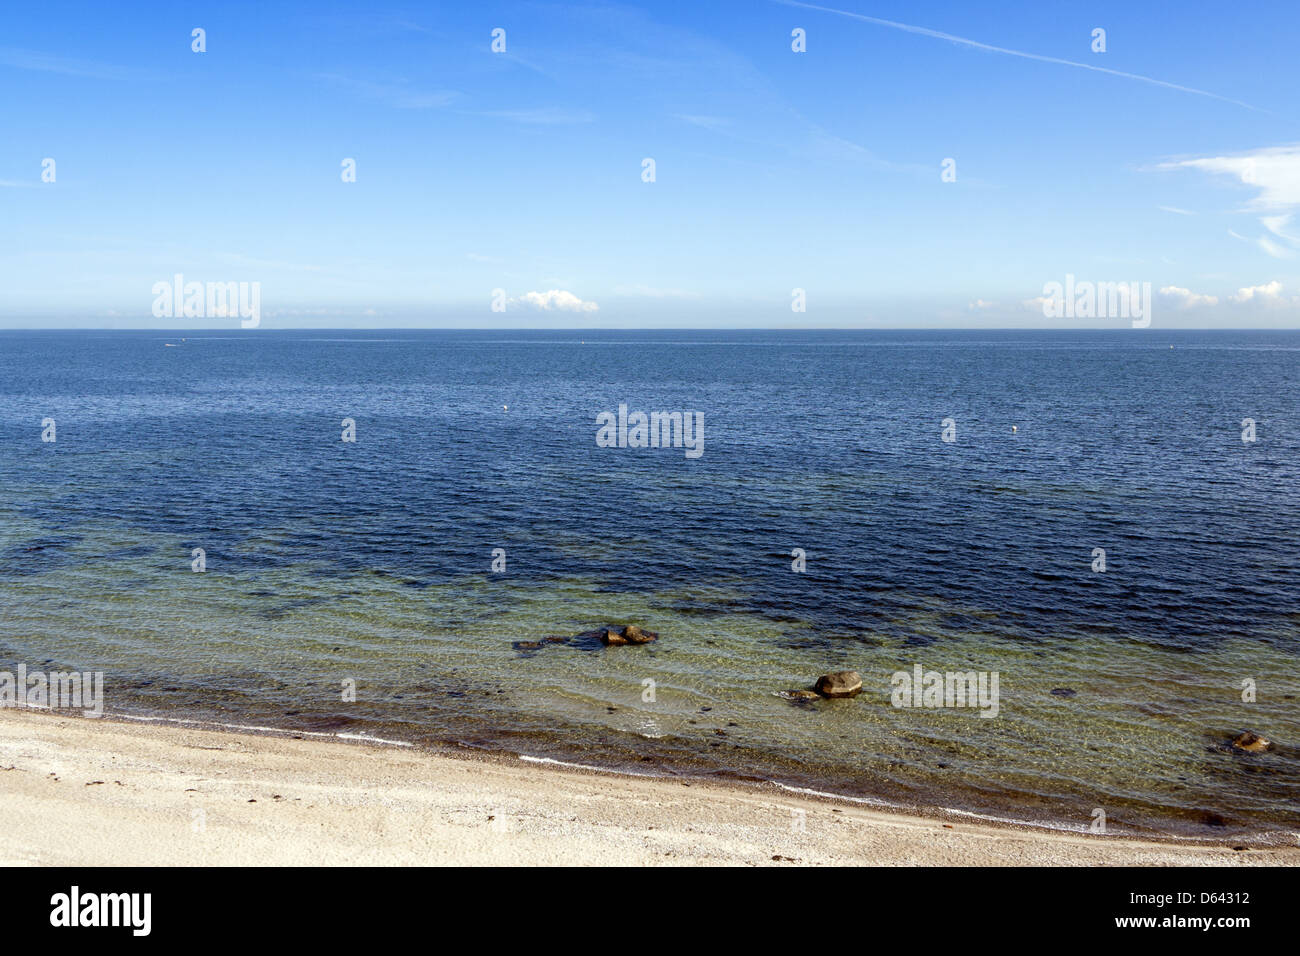 coast Baltic Sea Germany Stock Photo